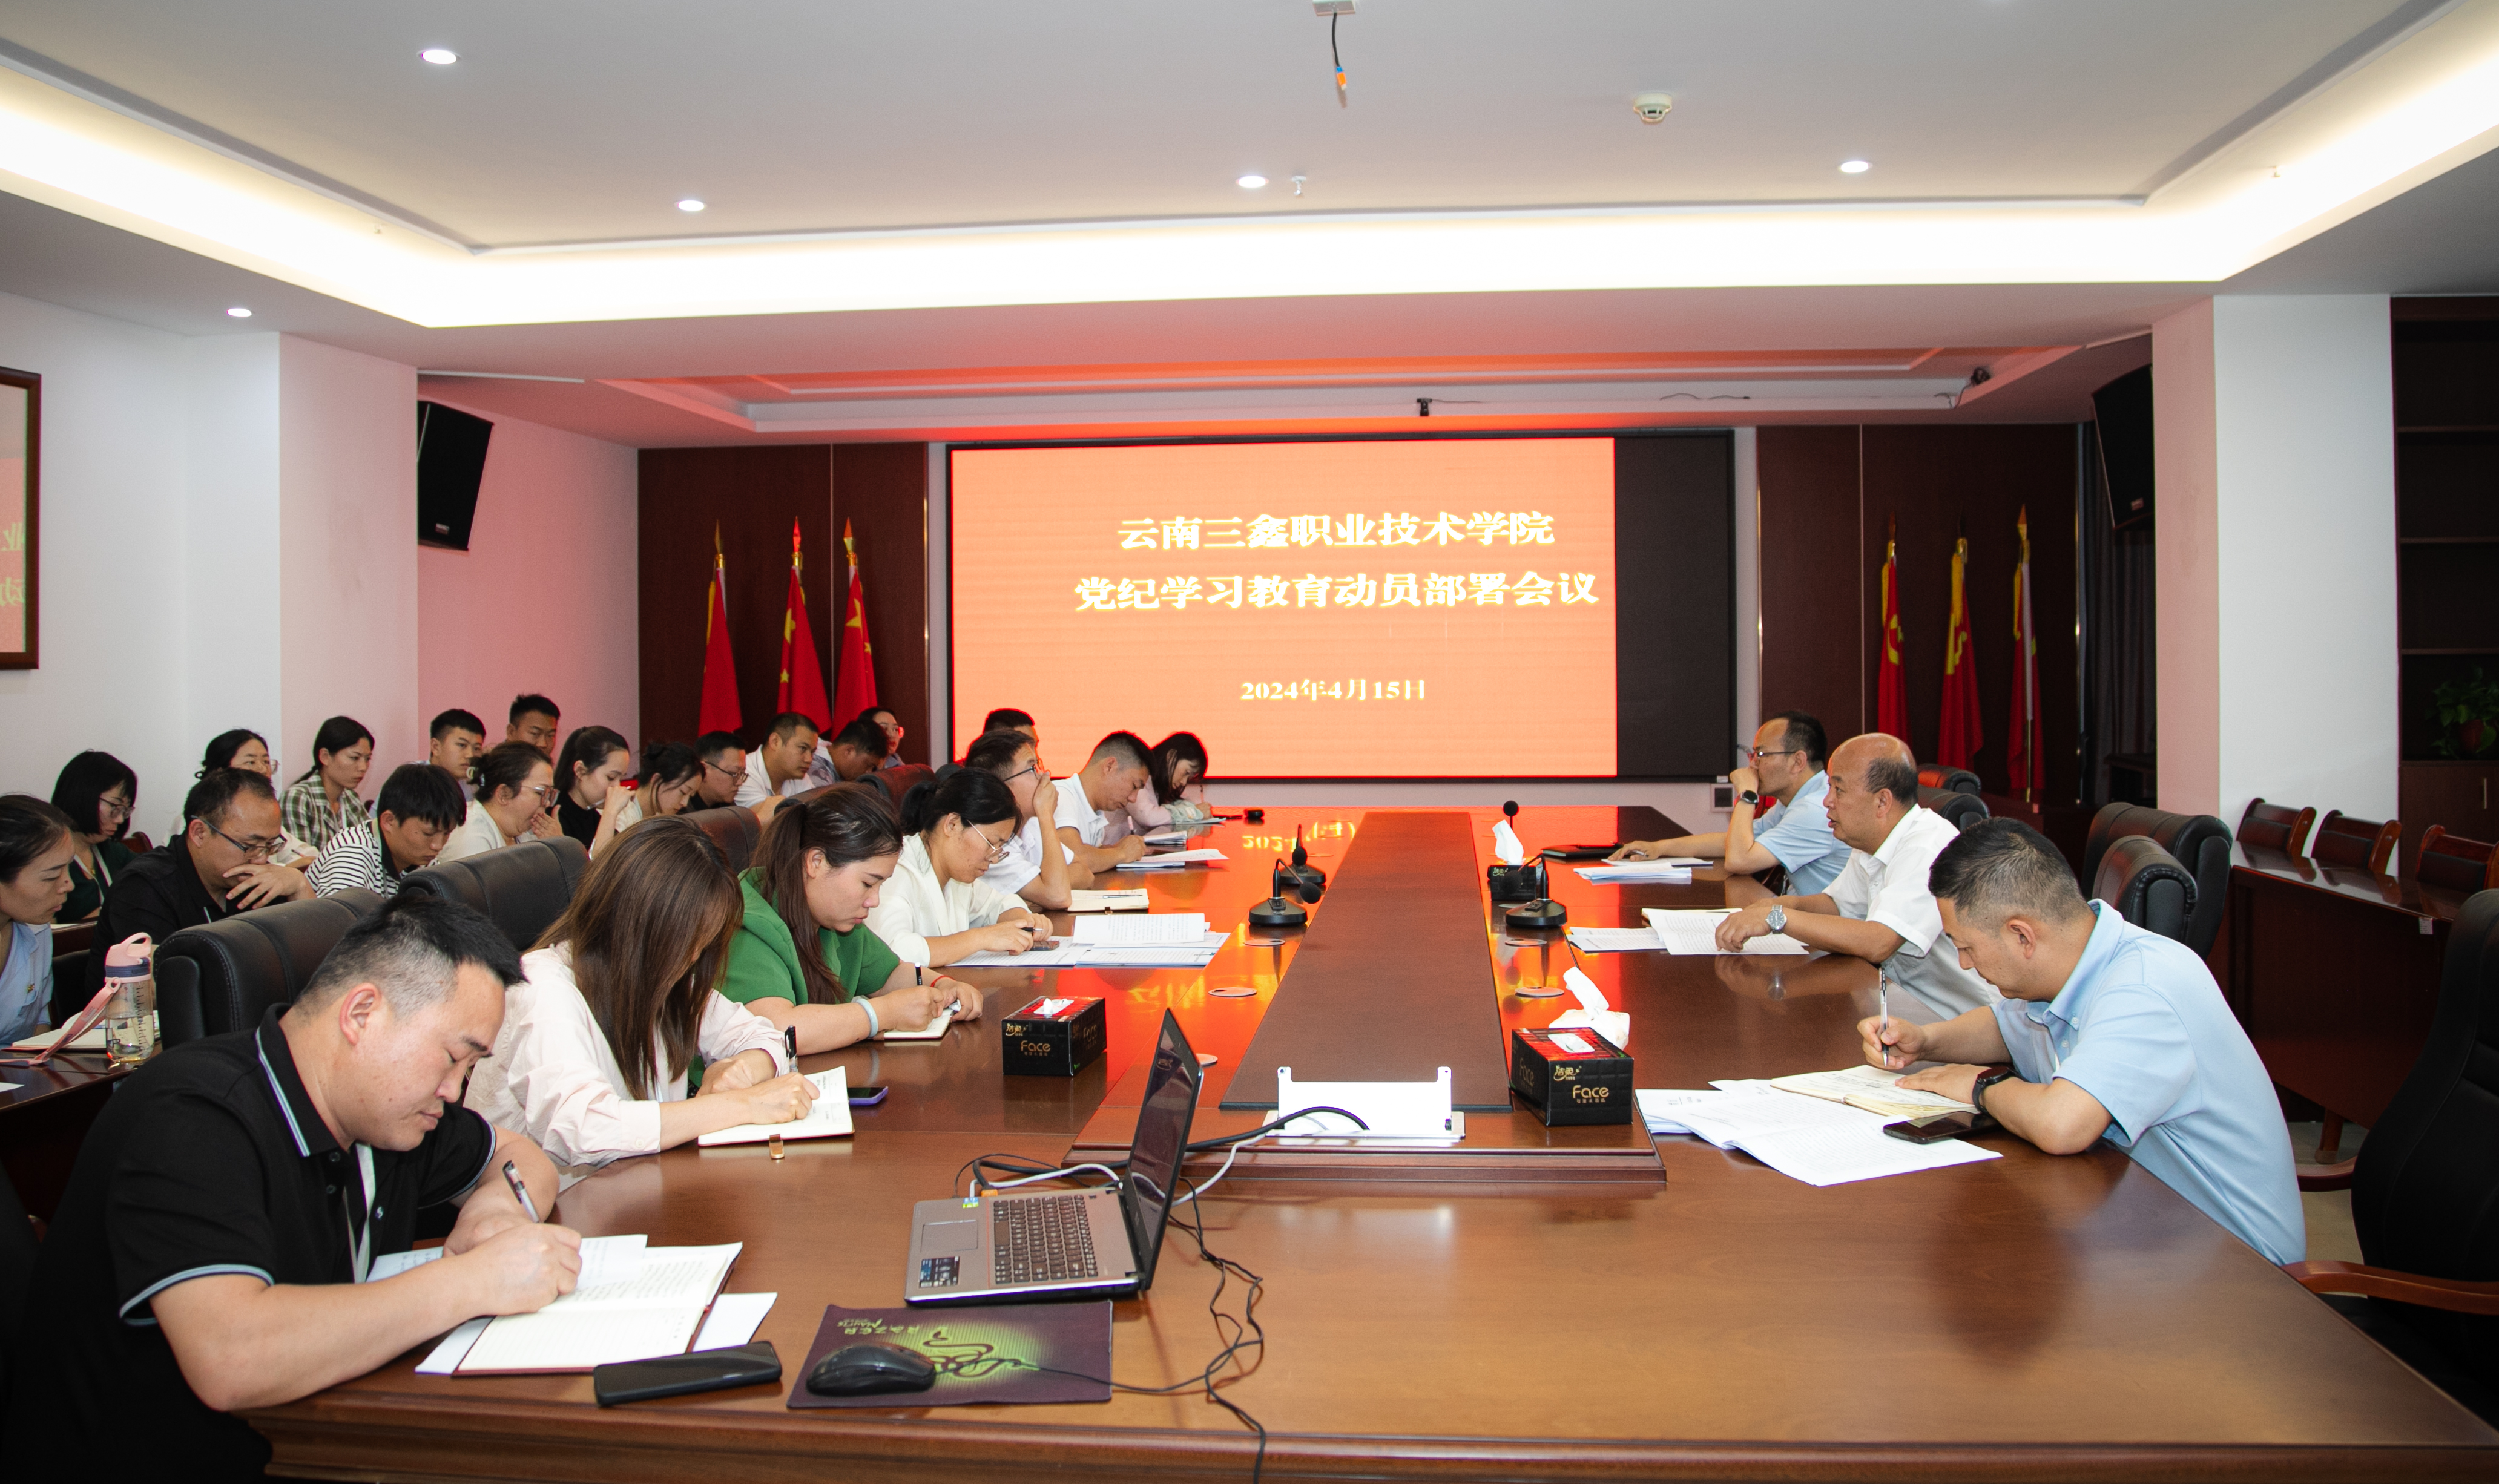 云南三鑫职业技术学院 召开党纪学习教育动员部署会议